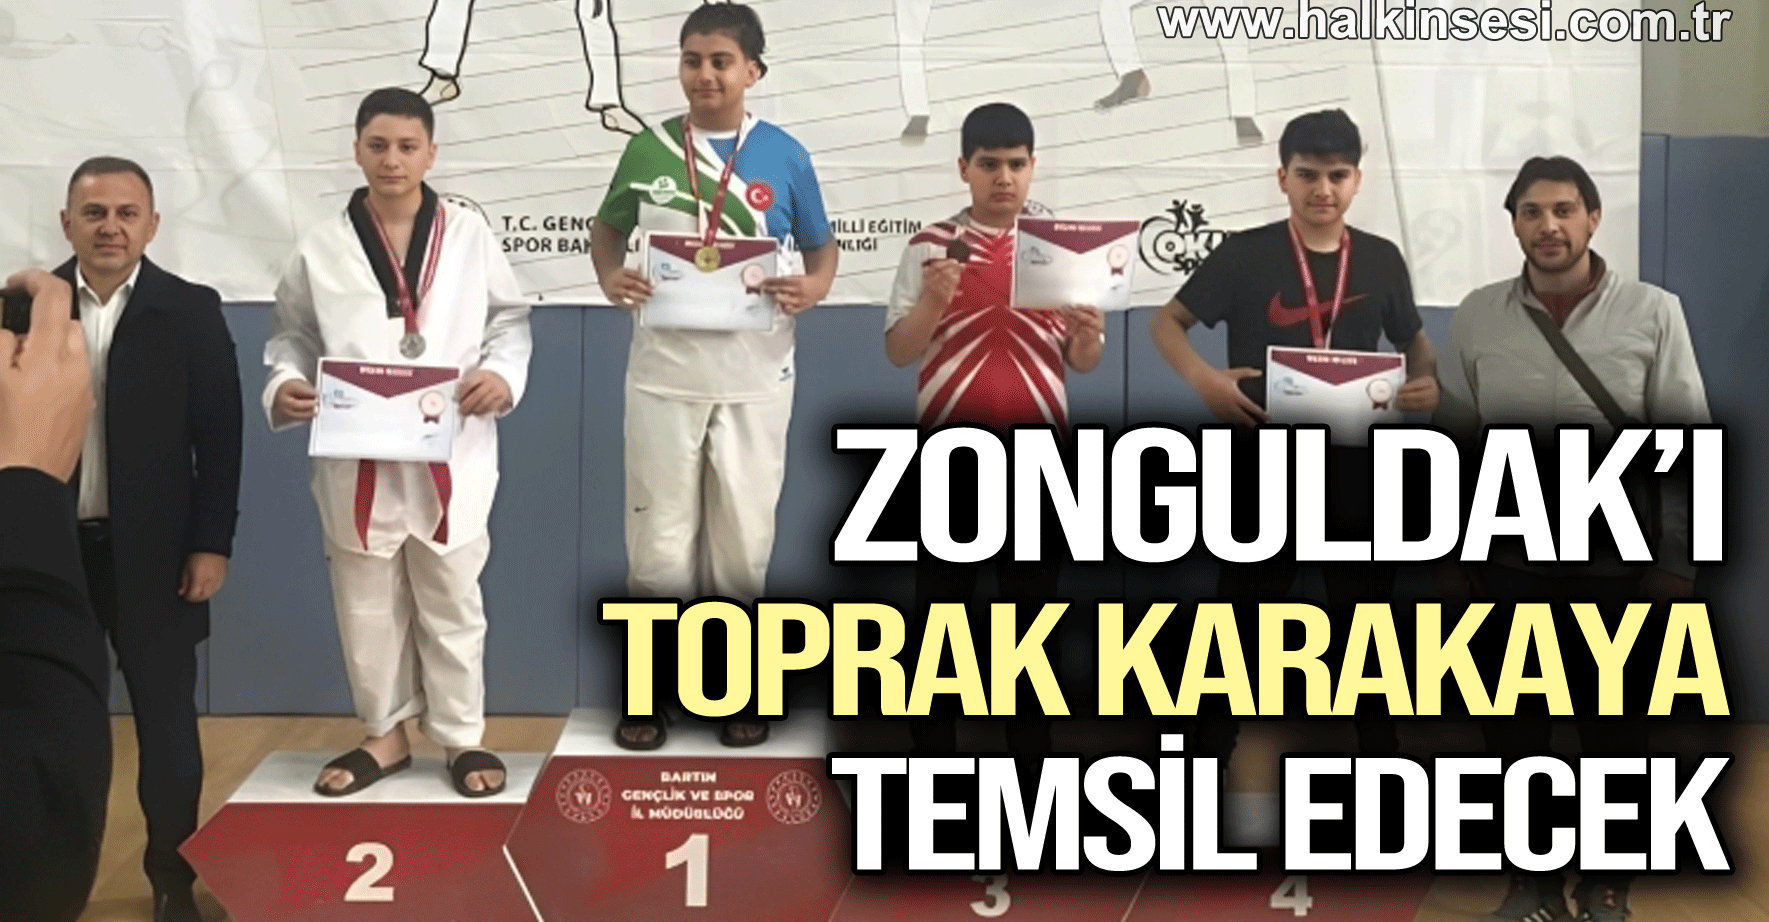 Zonguldak’ı Toprak Karakaya temsil edecek